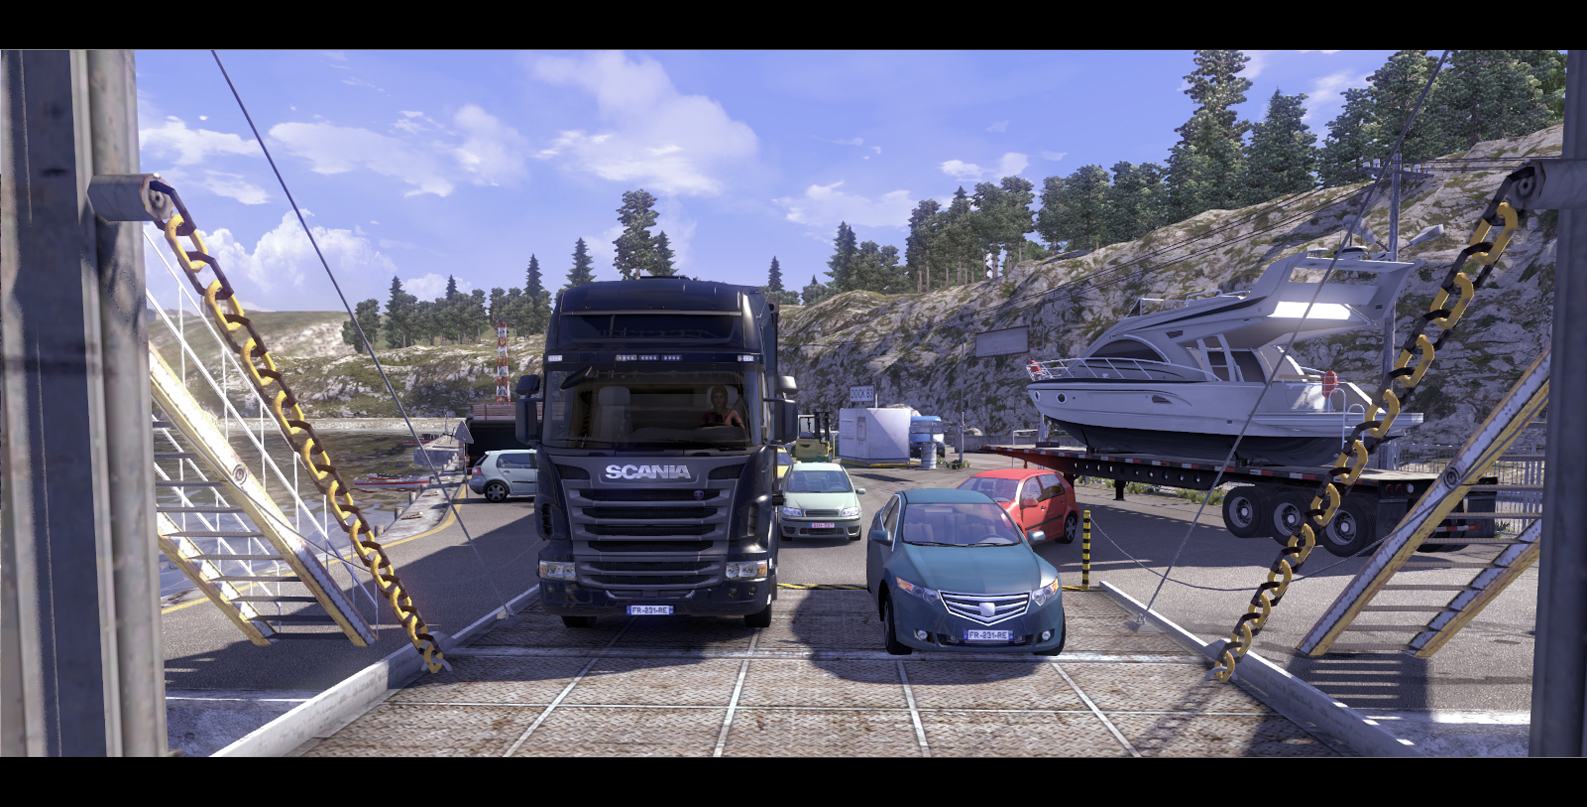 Simulator 2d игры. Скания трак драйв симулятор. Скания драйвинг симулятор 2. Скания трак драйвер симулятор. Scania Truck Driving Simulator Map.